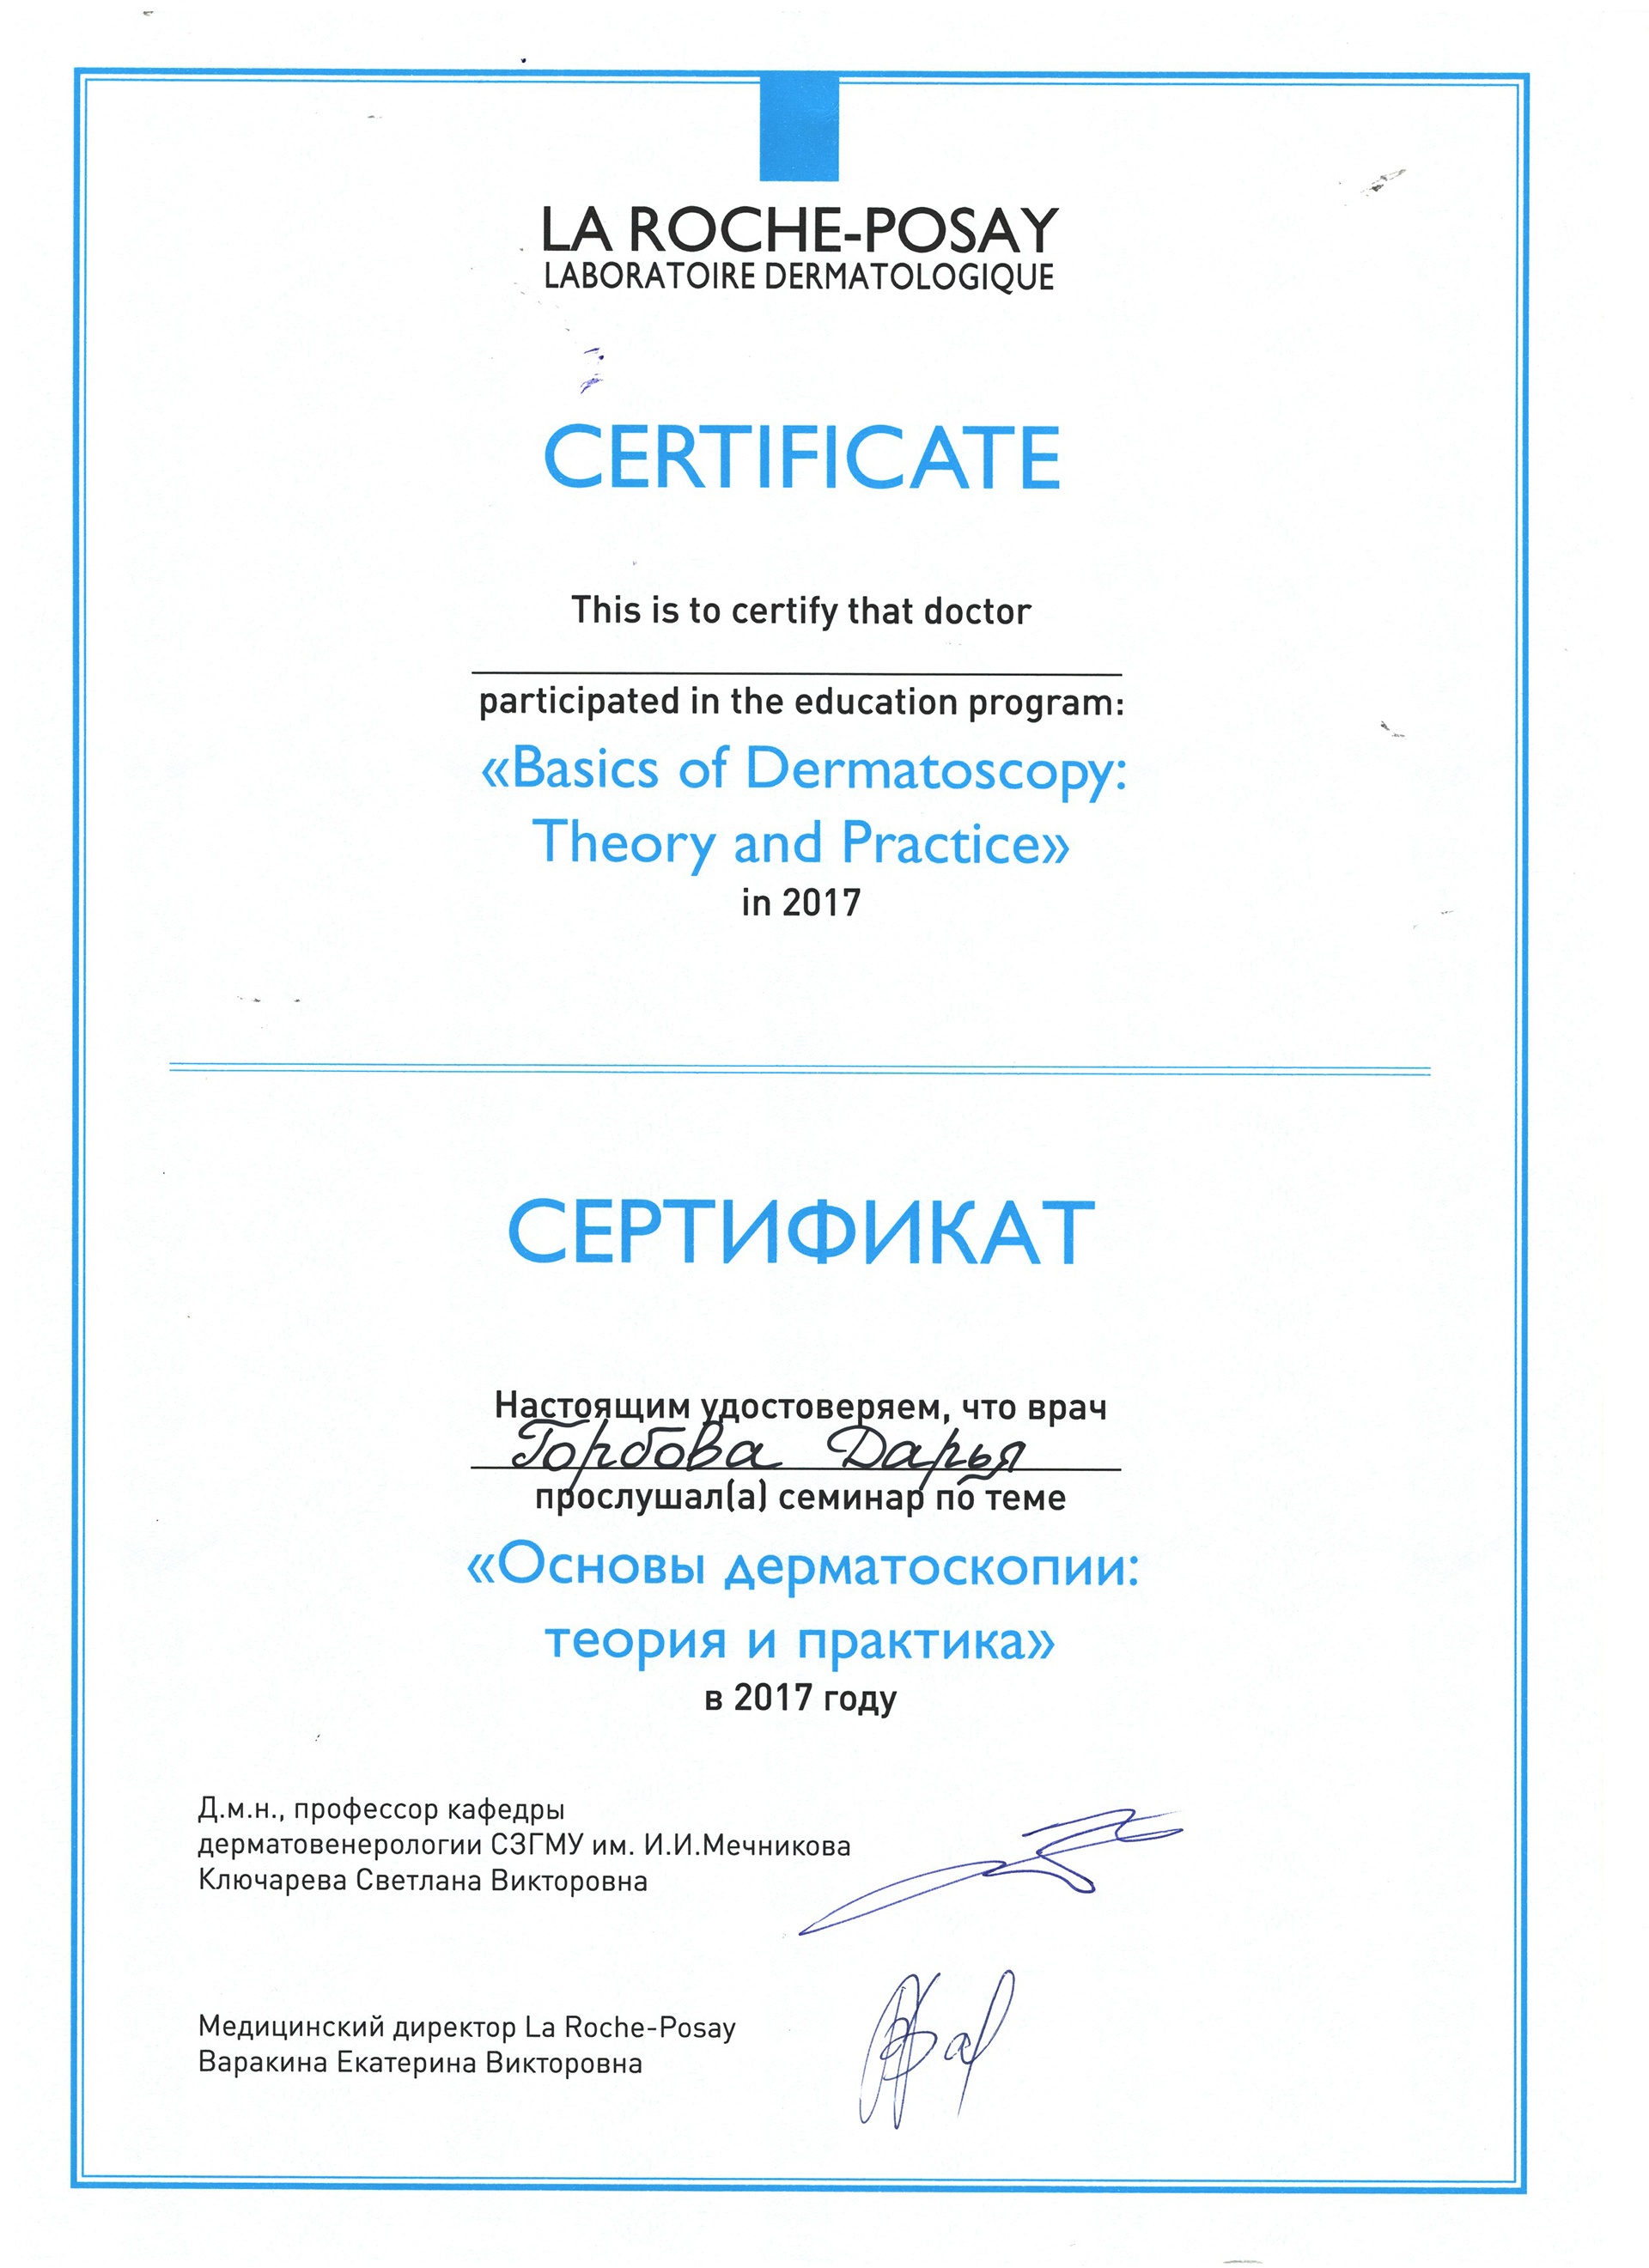 Сертификат — Семинар «Основы дерматоскопии: теория и практика». Горбова Дарья Владимировна